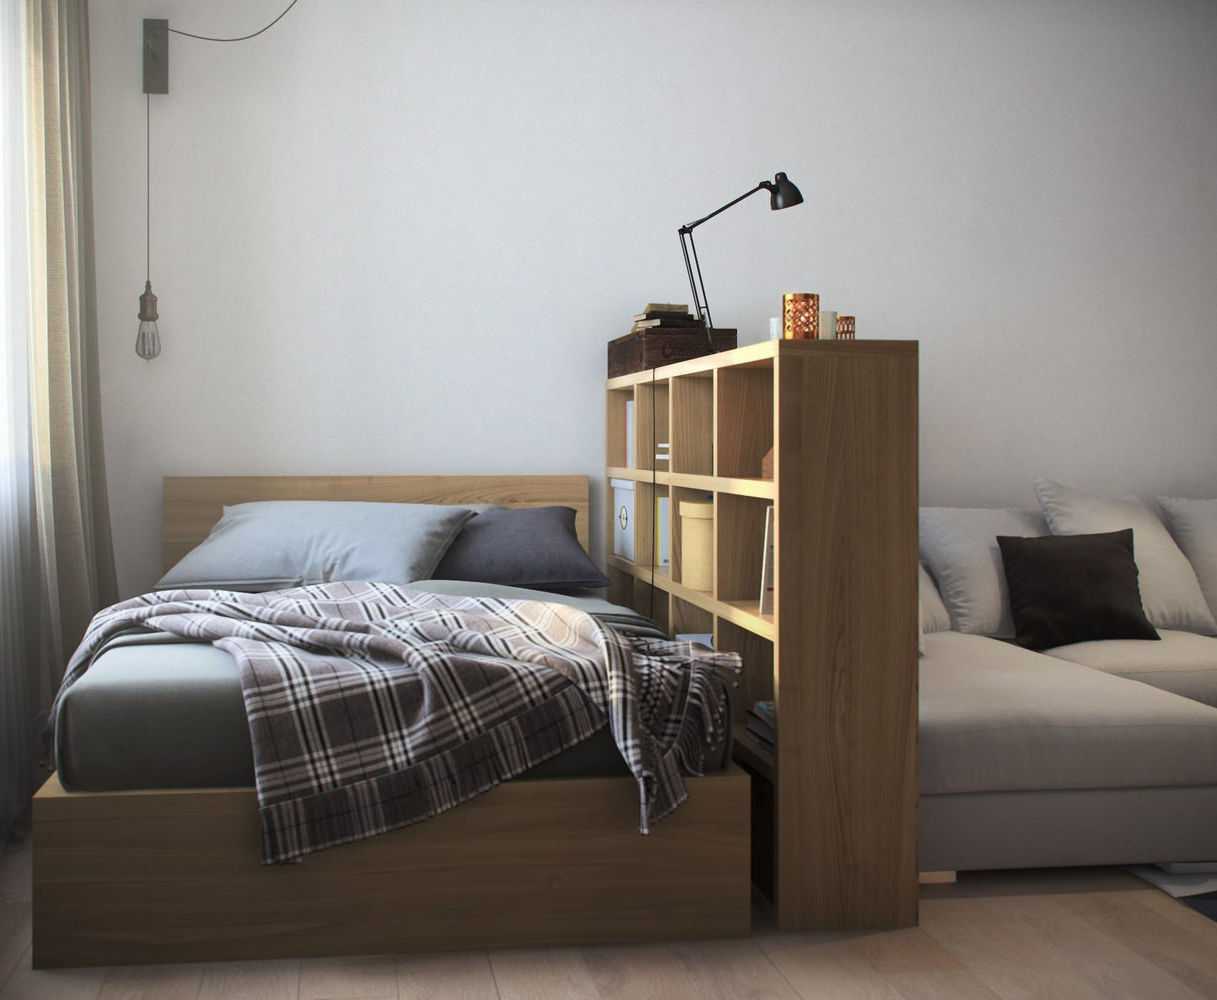 Мебель-трансформер для маленькой квартиры — 120 фото вариантов удачного размещения и сочетания